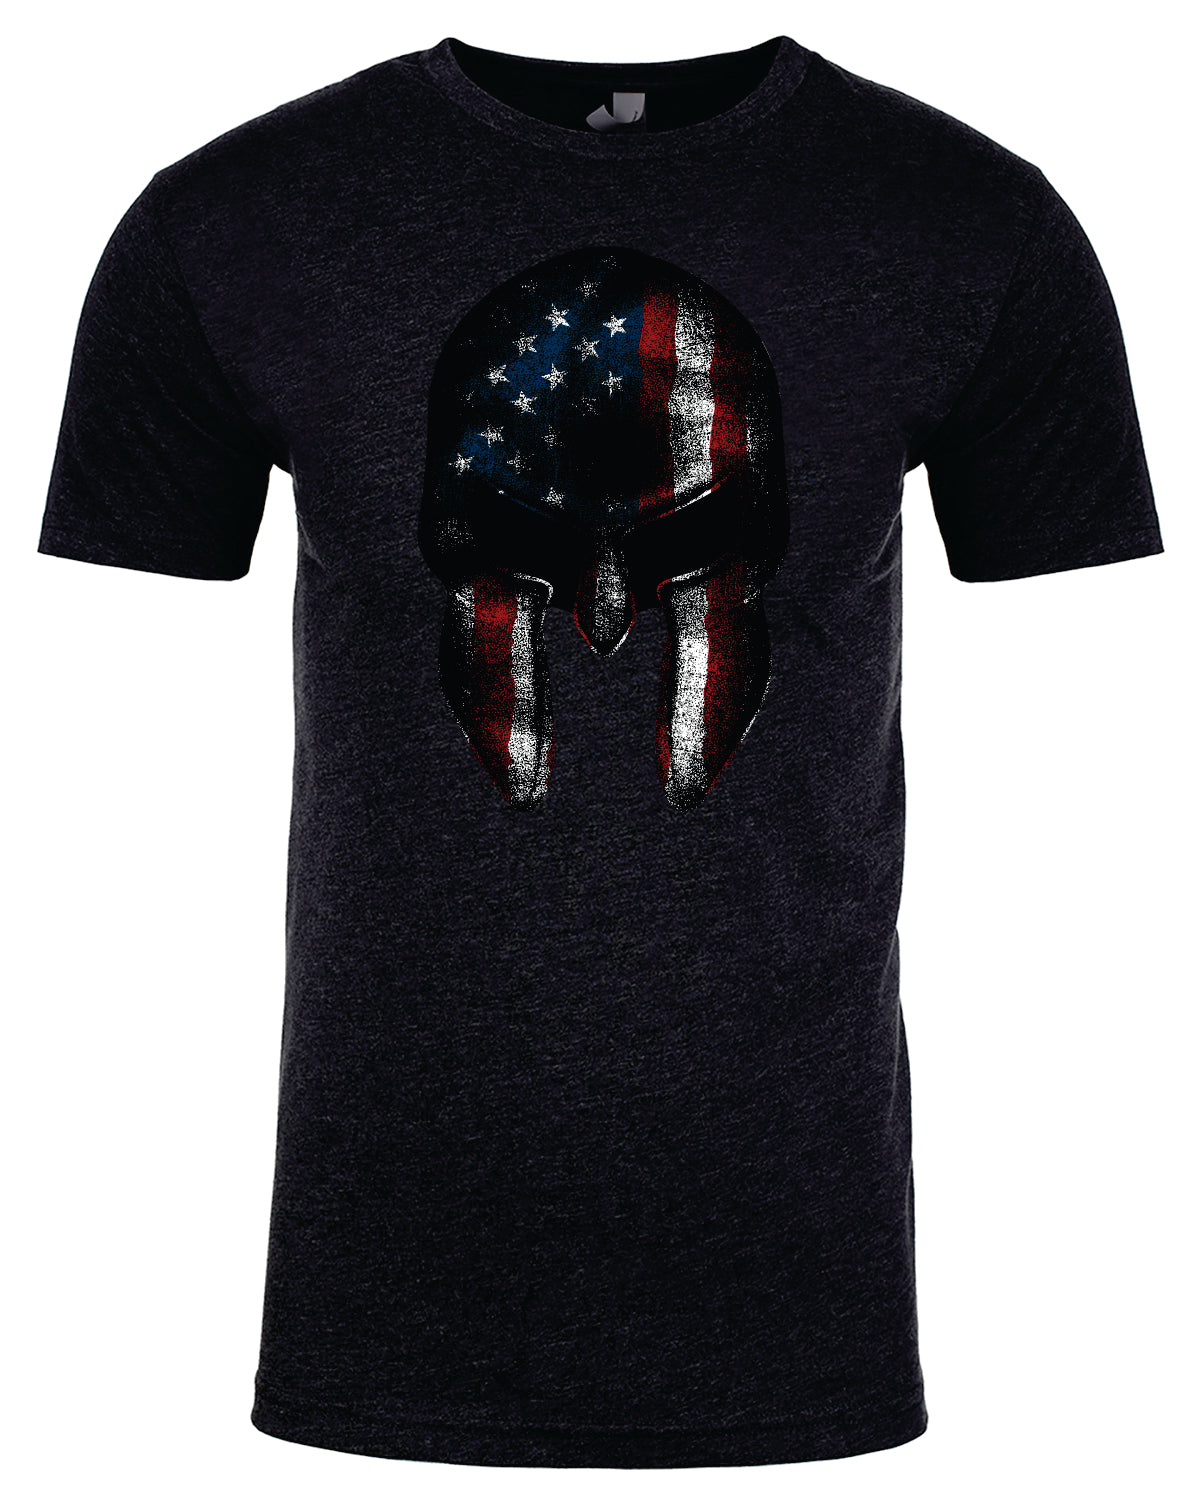 American Spartan T-Shirt